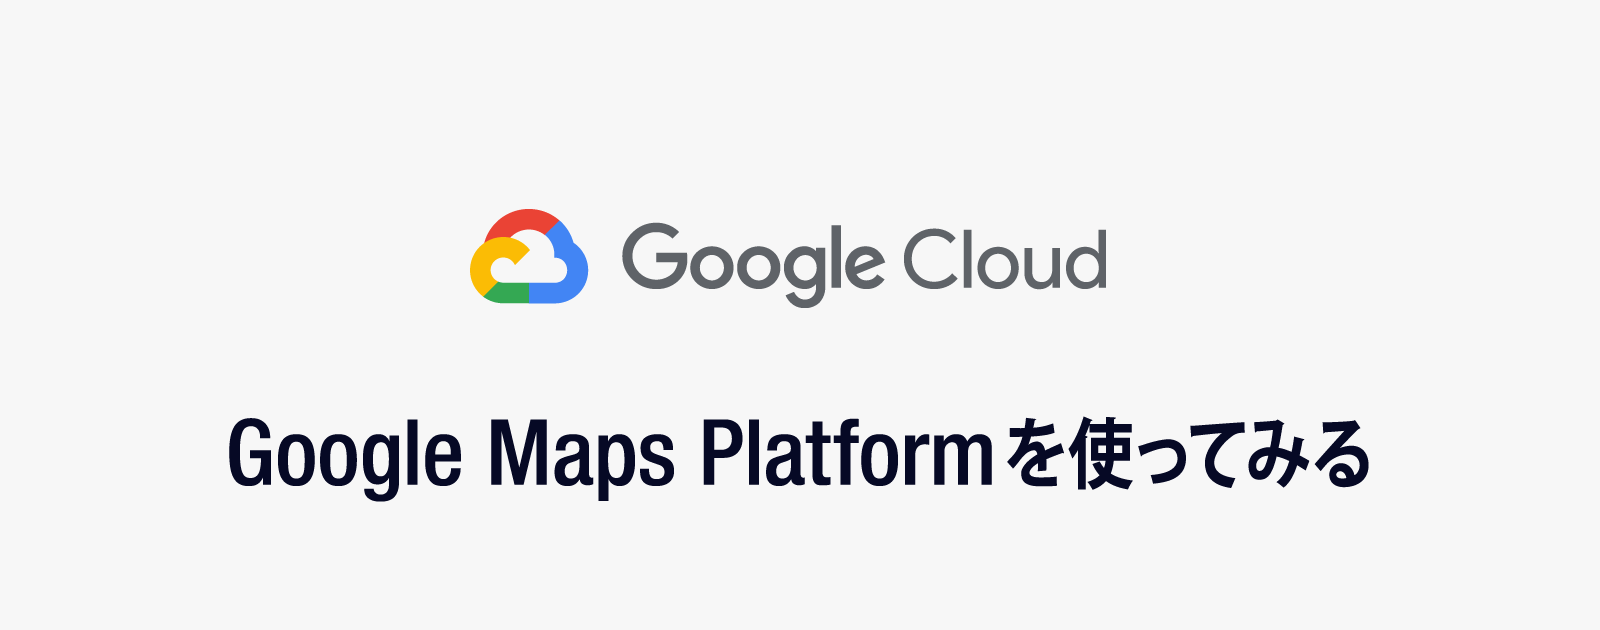 新しいGoogleマップ「Google Maps Platformの使い方」まとめ